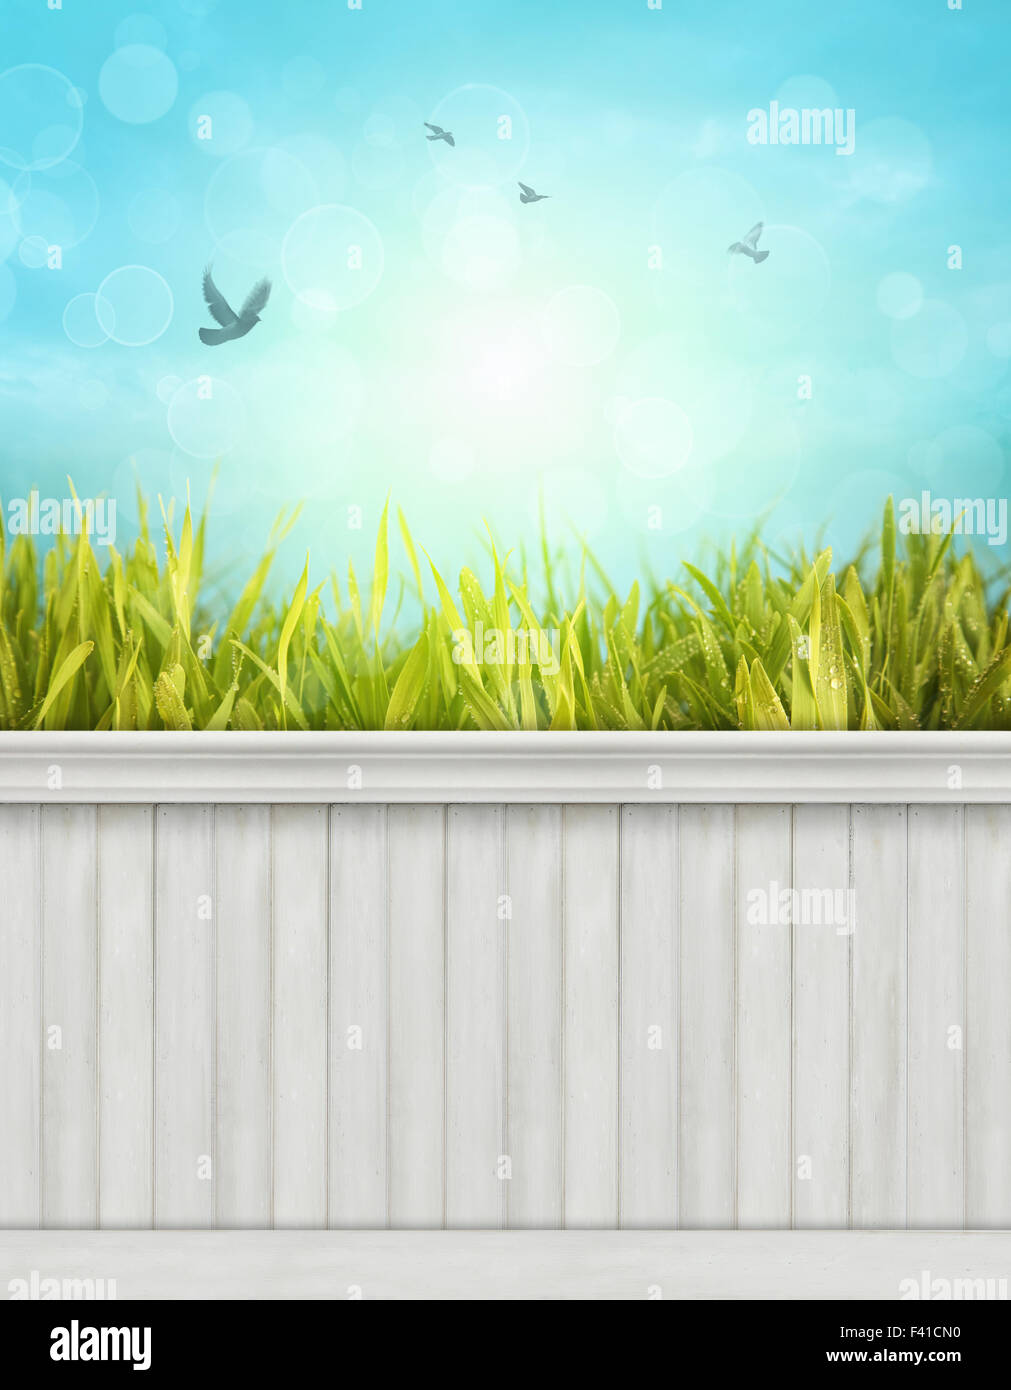 Frühling Wand Hintergrund/Hintergrund Stockfoto